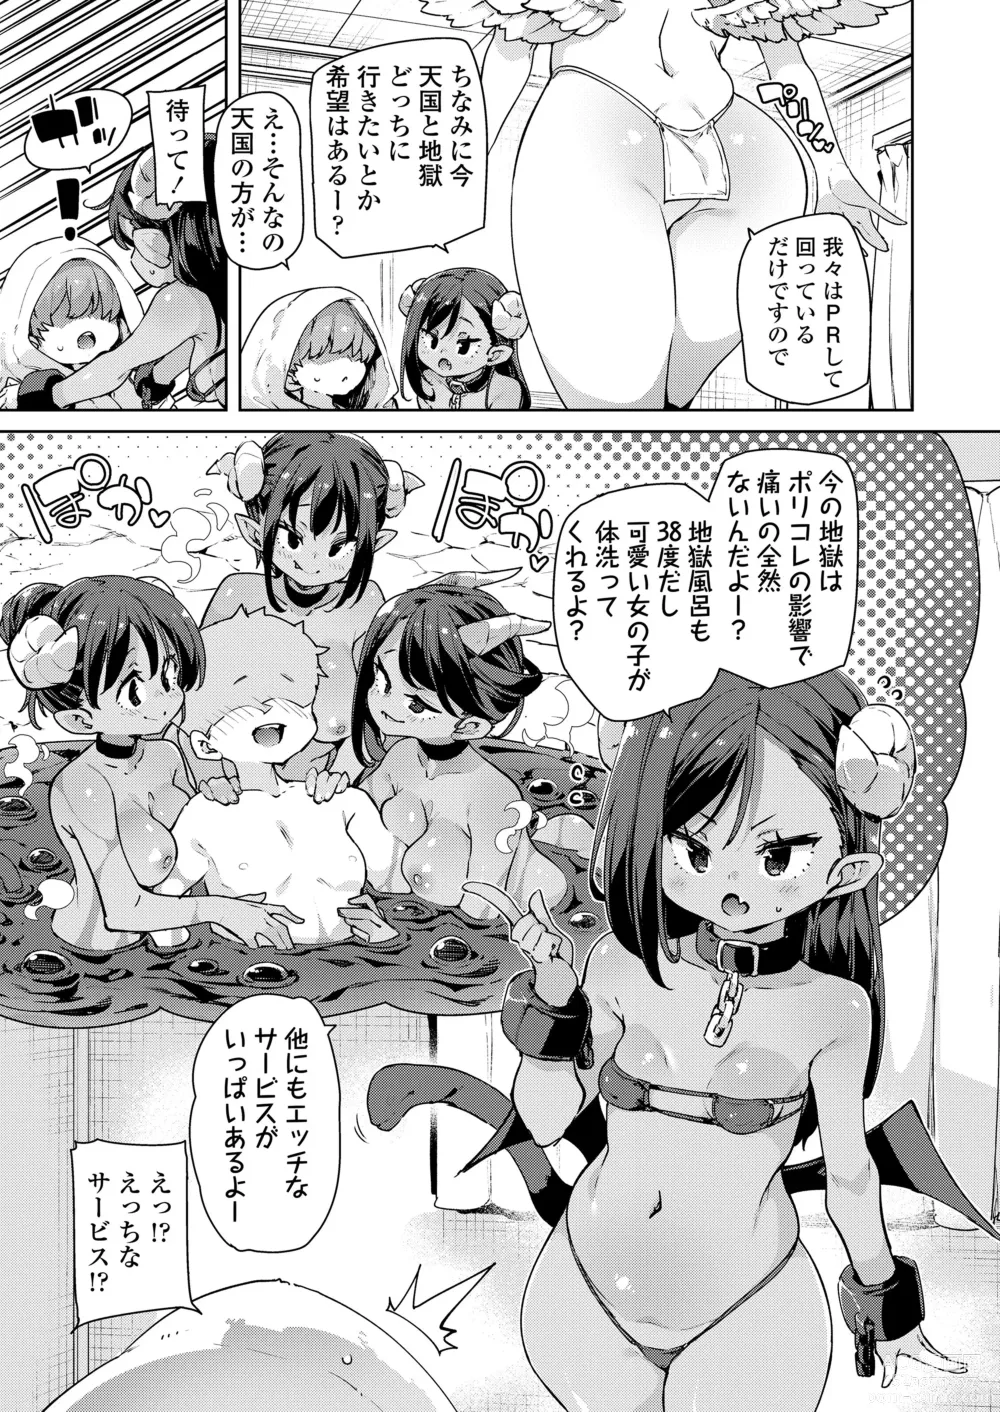 Page 5 of manga Towako Oboro Emaki 14